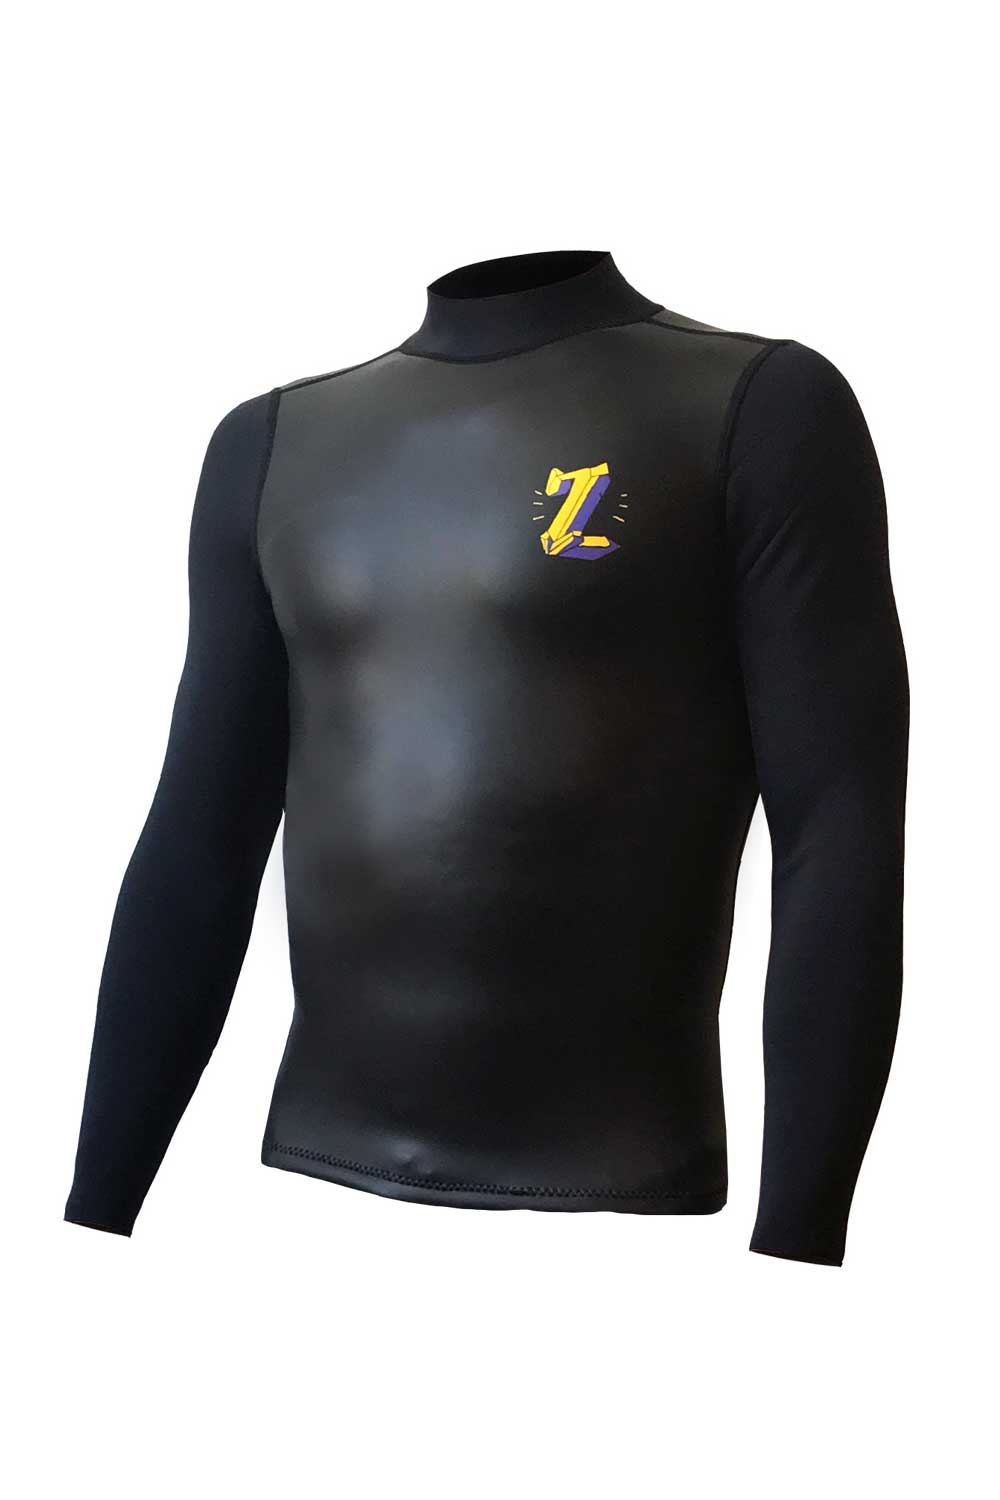 ZION Asher Pacey Crystal Vortex 2/1mm Surf Vest